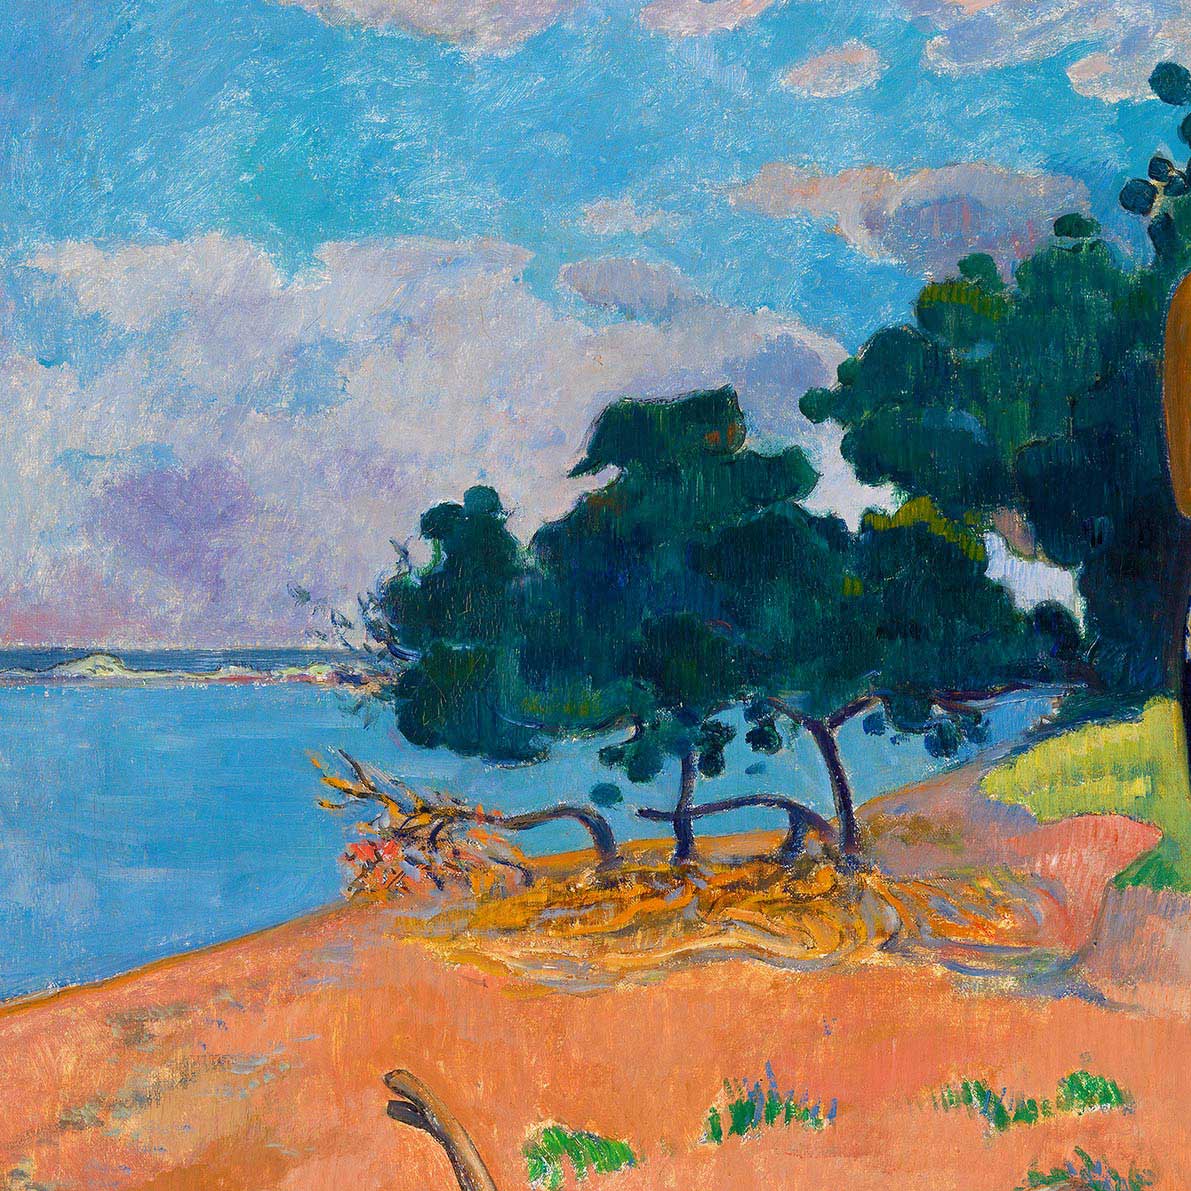 Haere Pape by Paul Gauguin